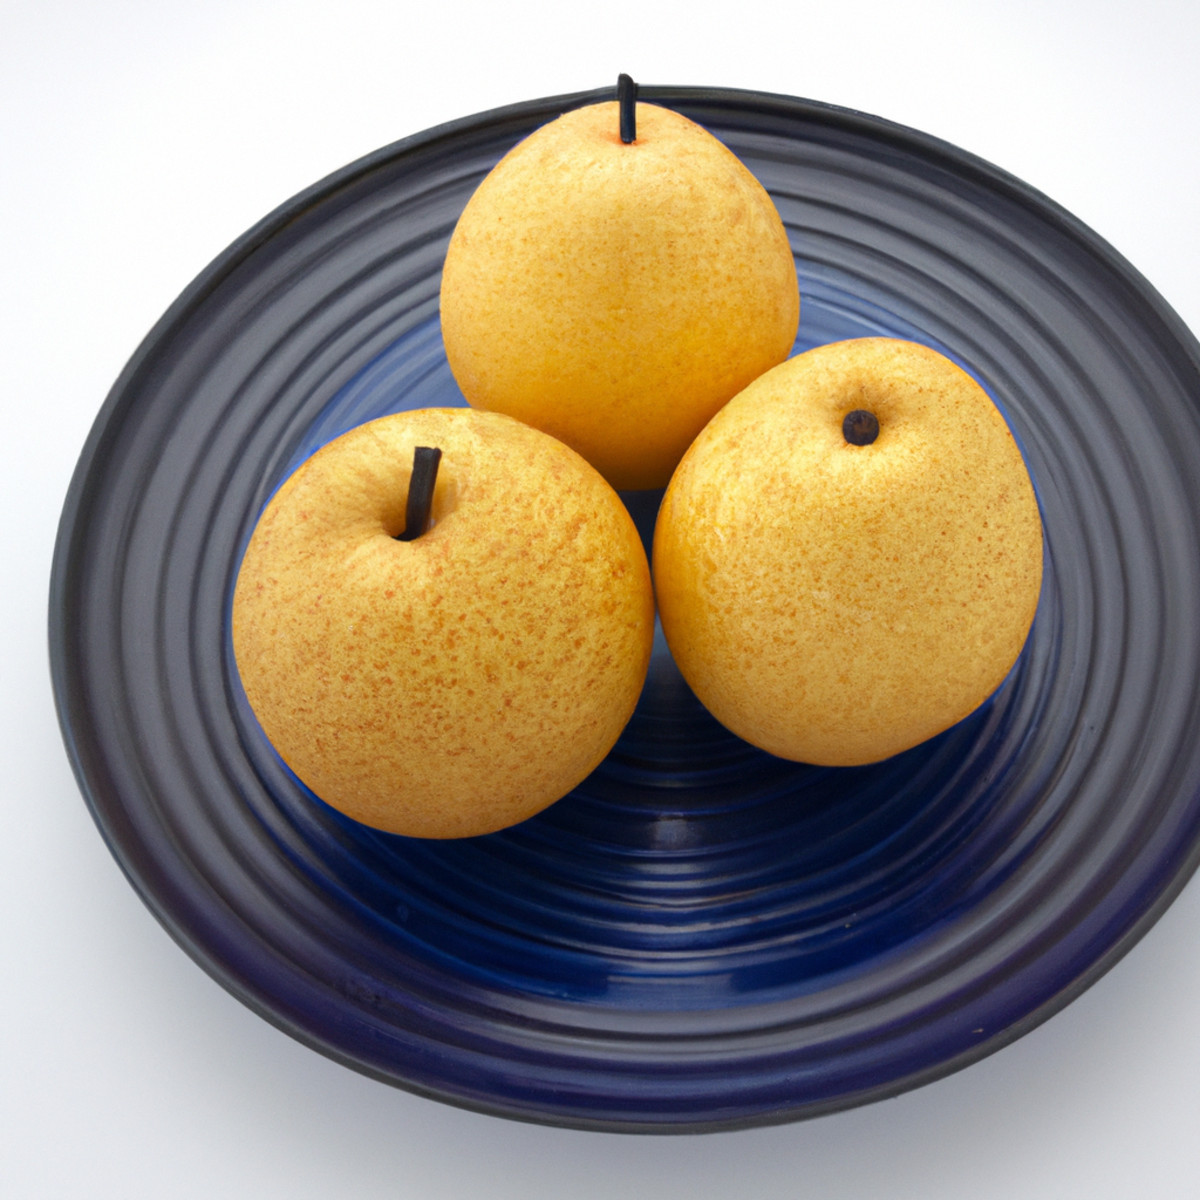 Nashiji japansk knivfinish - Det estetiska "päron"-mönstret förklaras